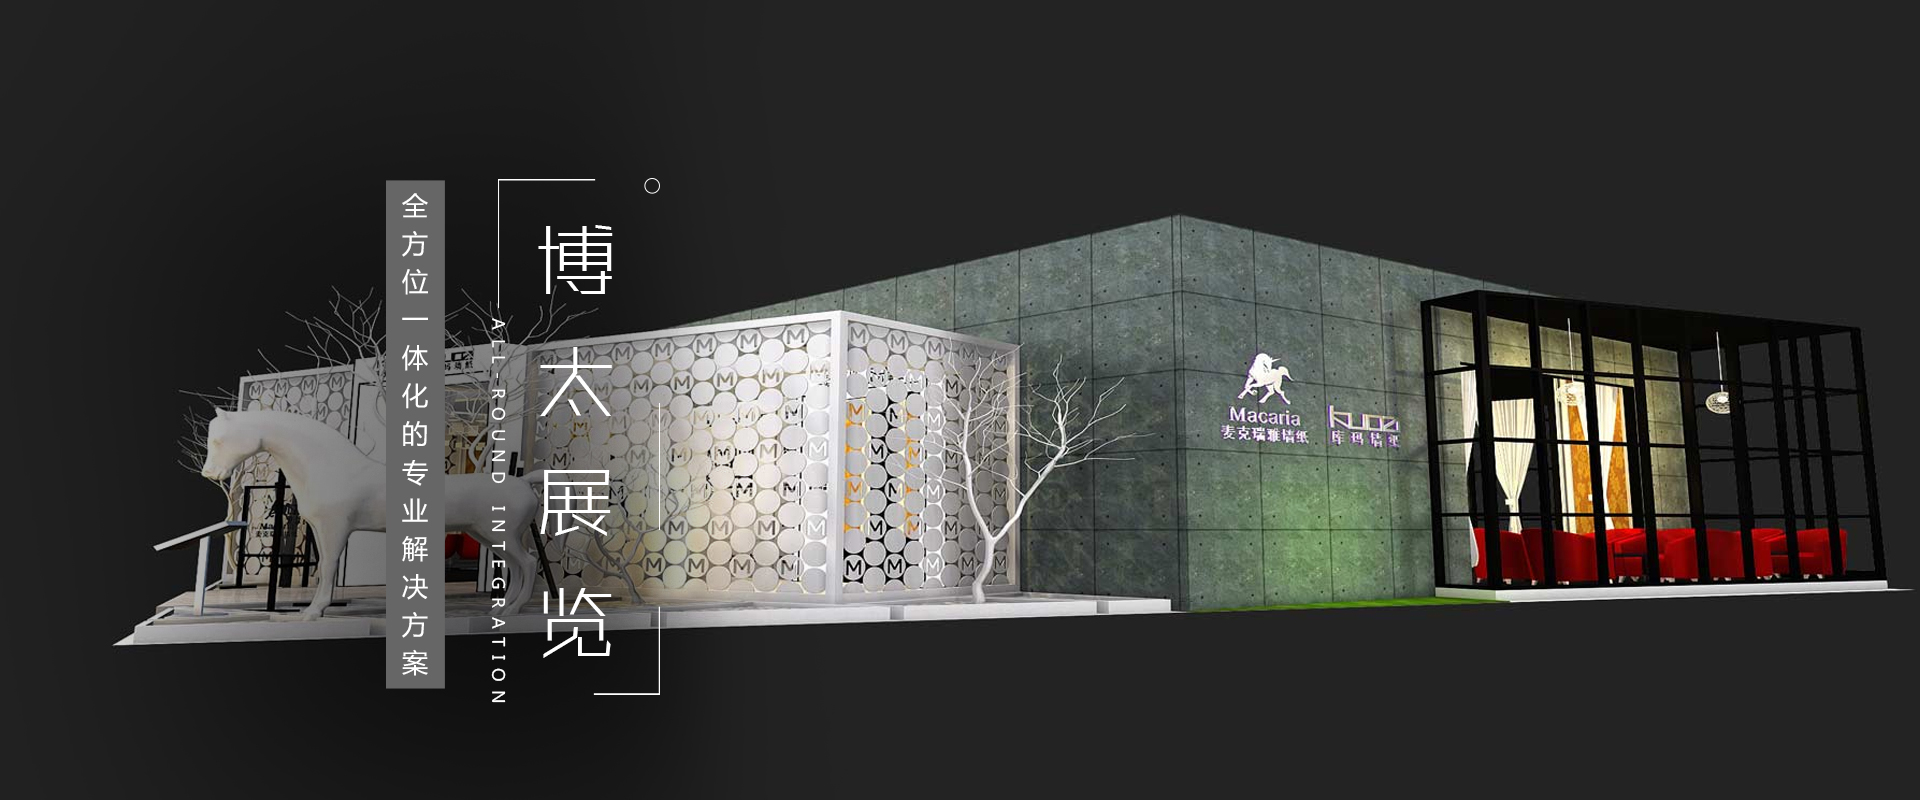 重庆展厅设计